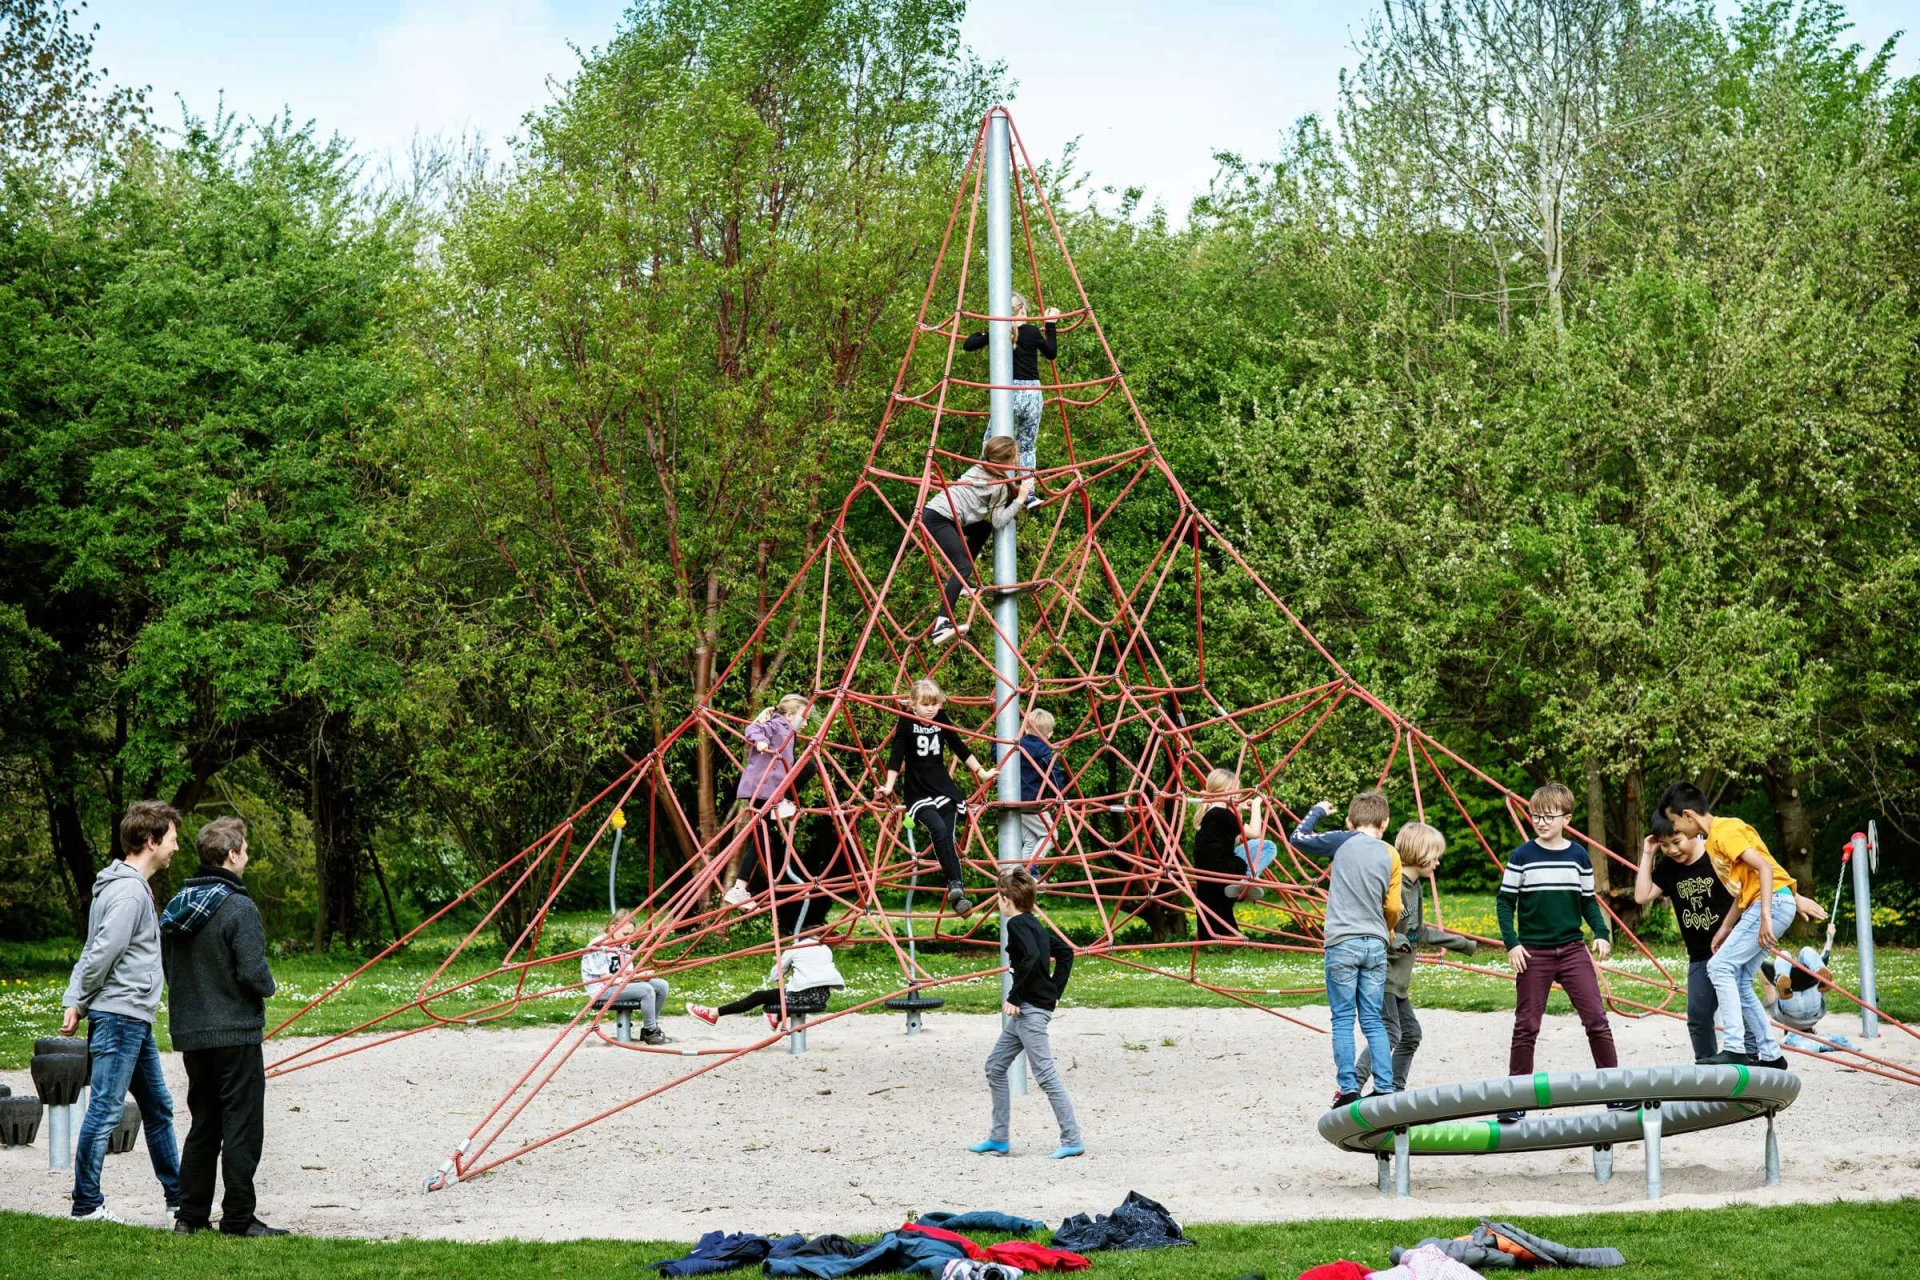 un groupe de personnes jouant sur une structure grimpante en forme de pyramide dans une aire de jeux